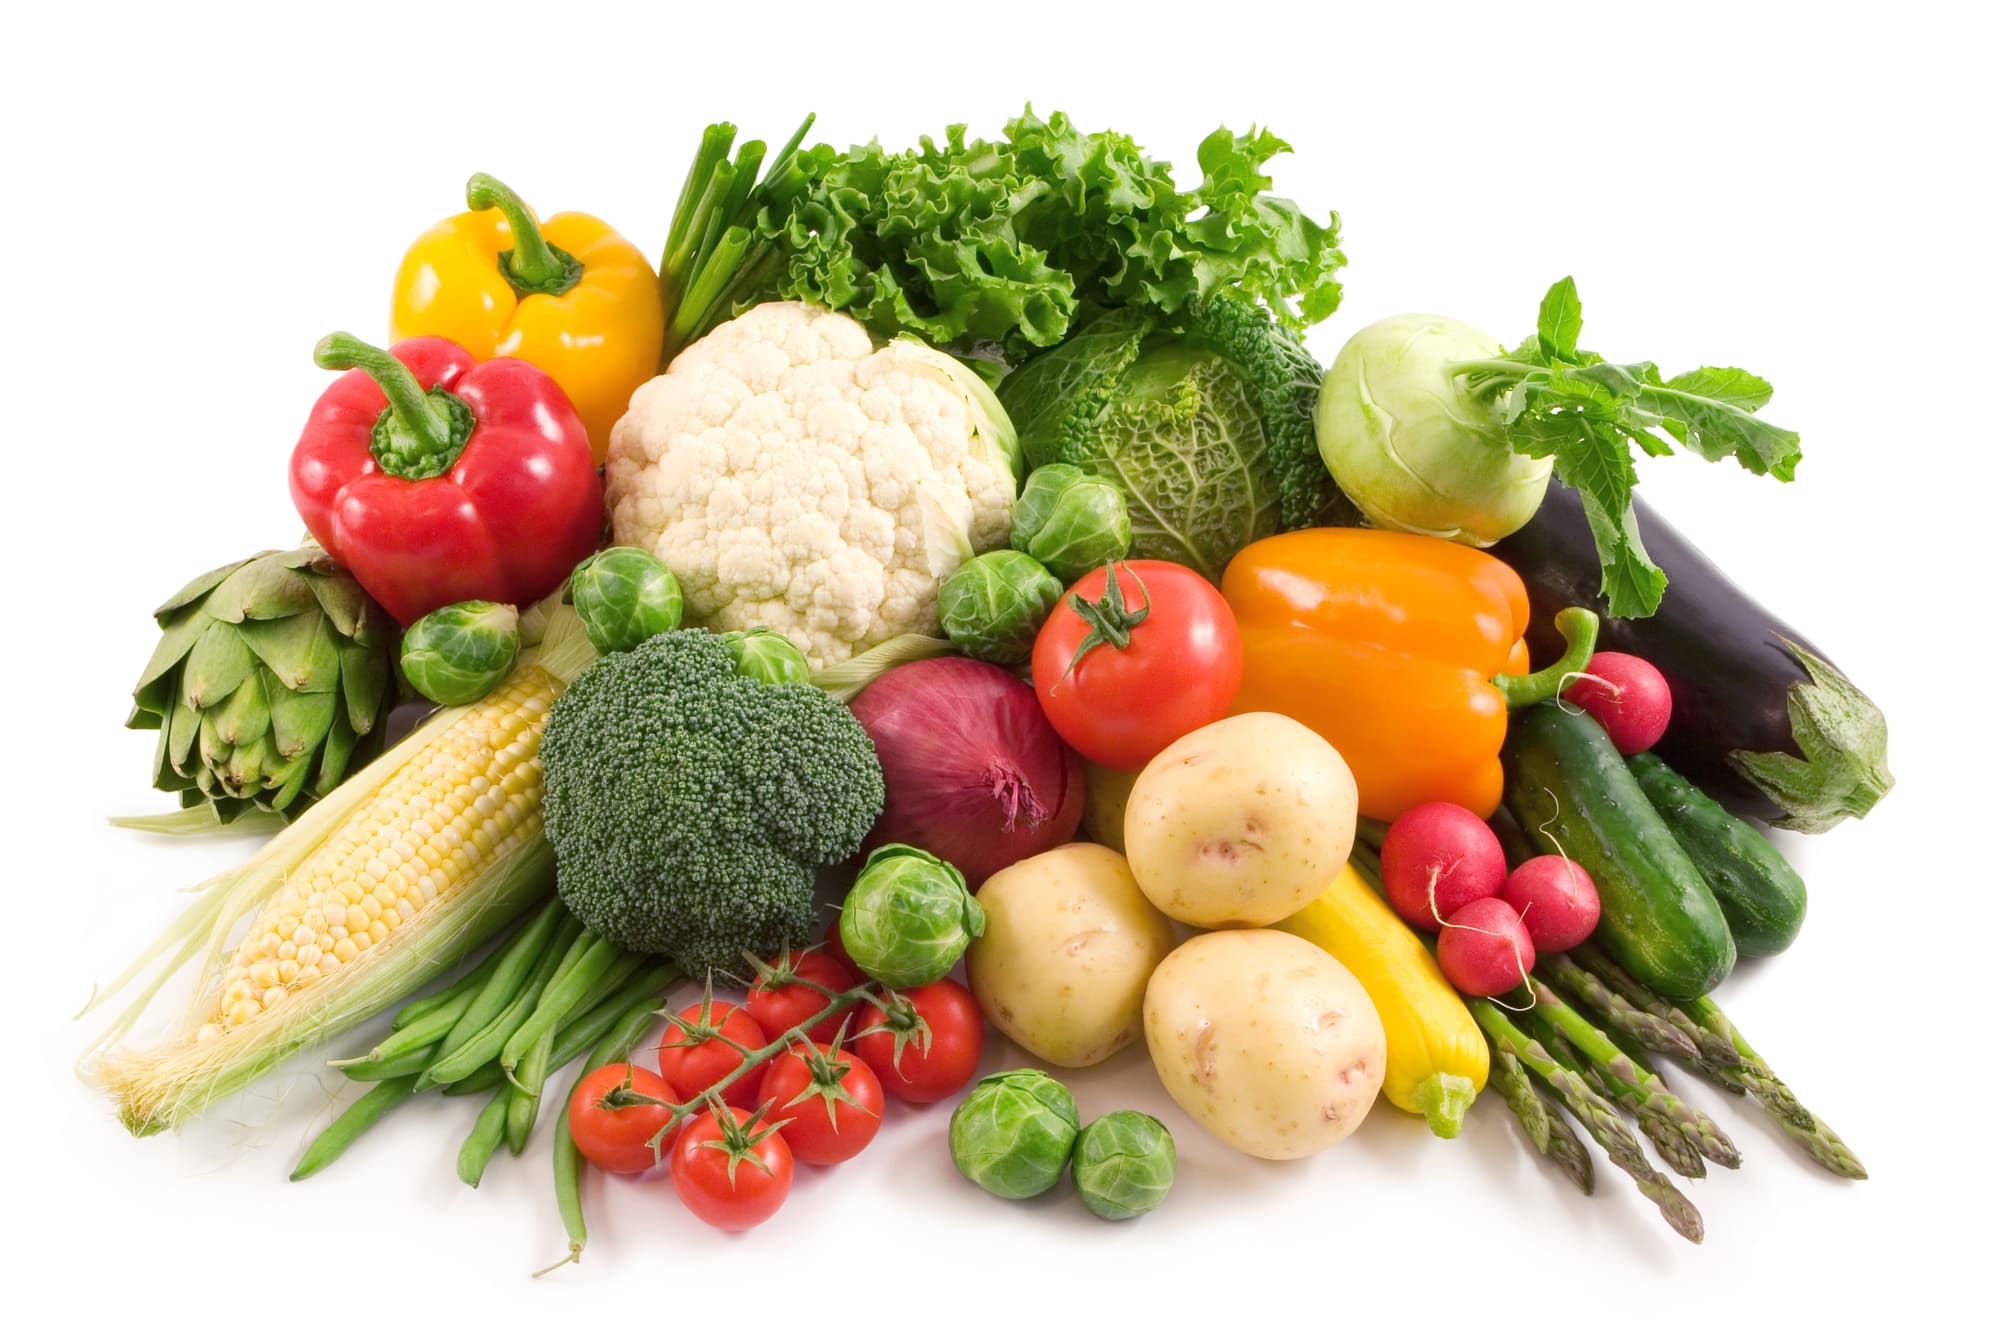 Healthiest vegetables information in Marathi